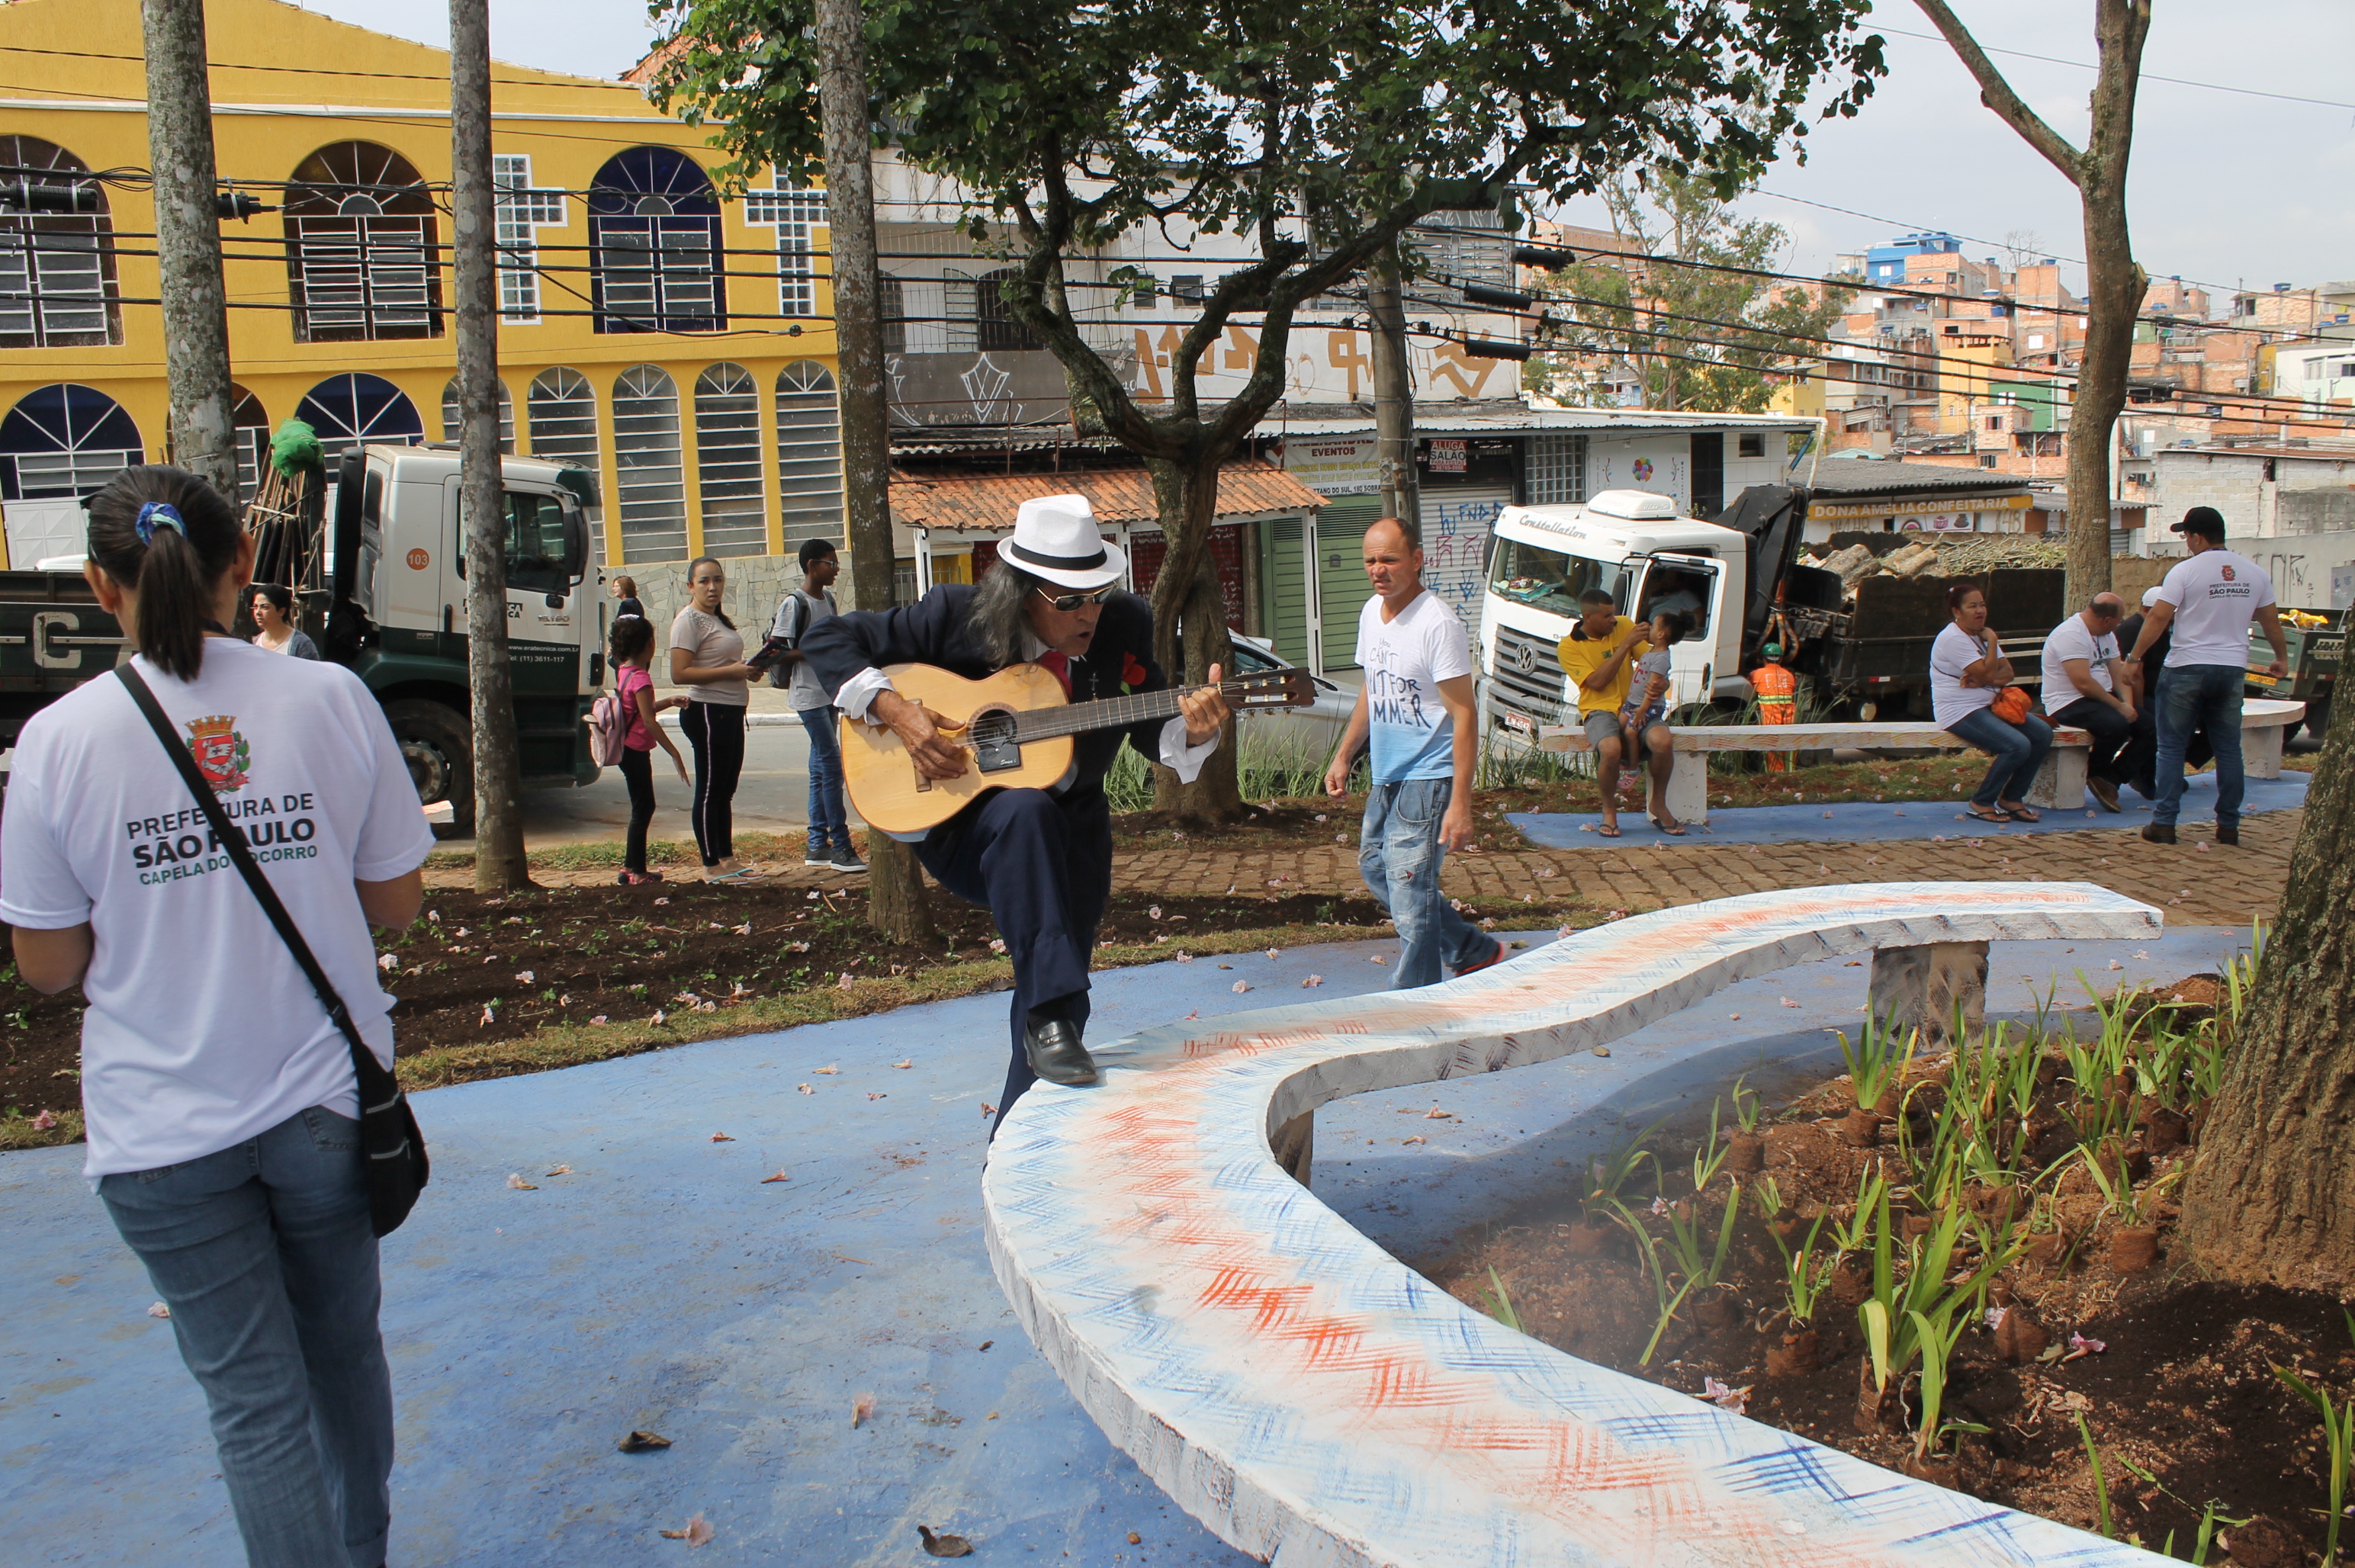 #PraCegoVer - Santana Batista, chamado o "Roberto Carlos do Grajaú", toca violão na praça Dois Corações. Santana usa chapéu e apoia o pé em um banco da praça.